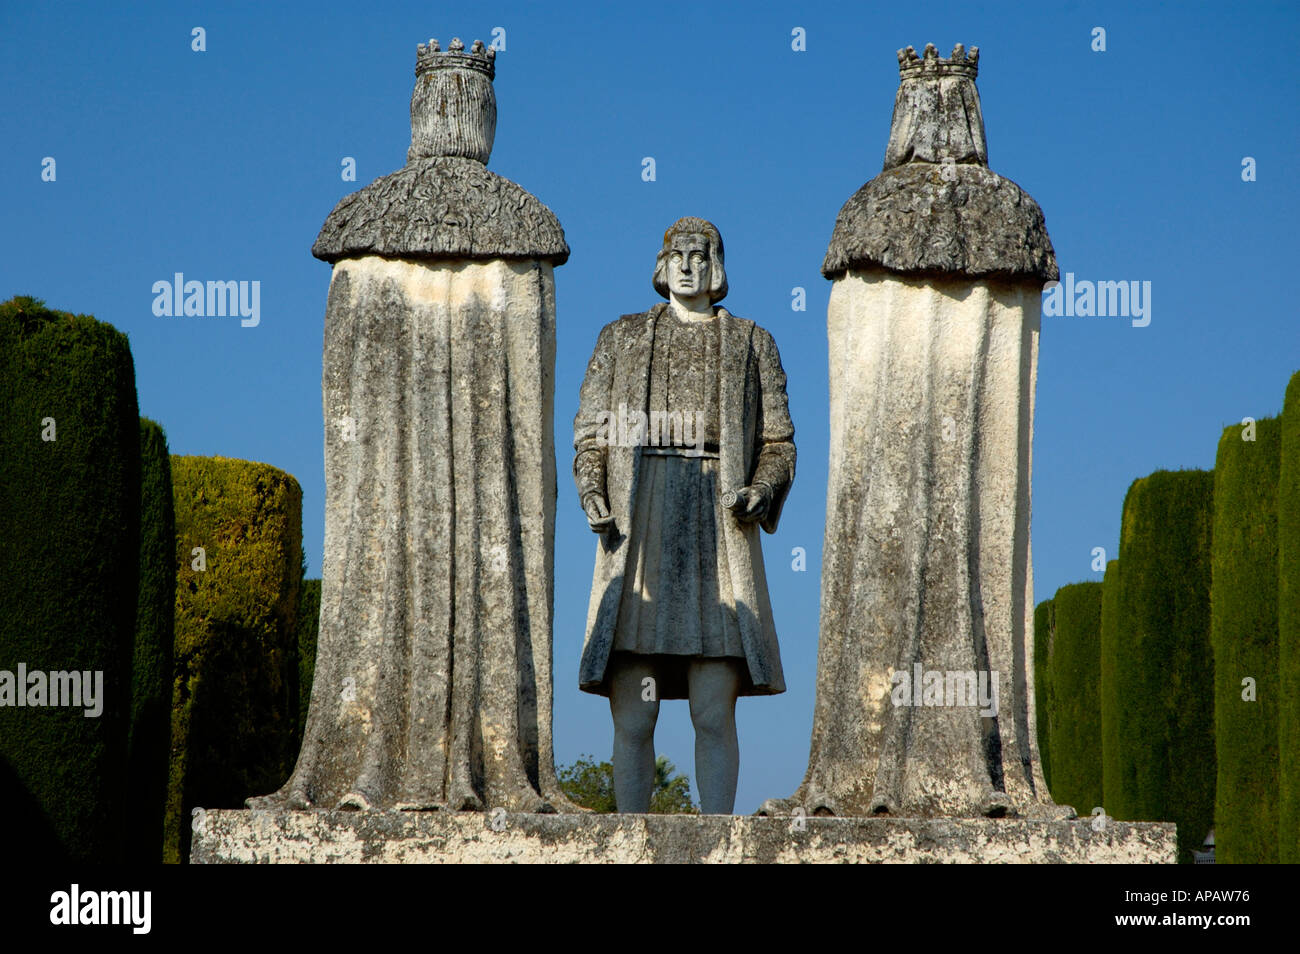 Des statues représentant Christophe Colomb à parler avec le roi Ferdinand II d'Aragon, dans les jardins de l'Alcazar de Cordoue, Espagne Banque D'Images